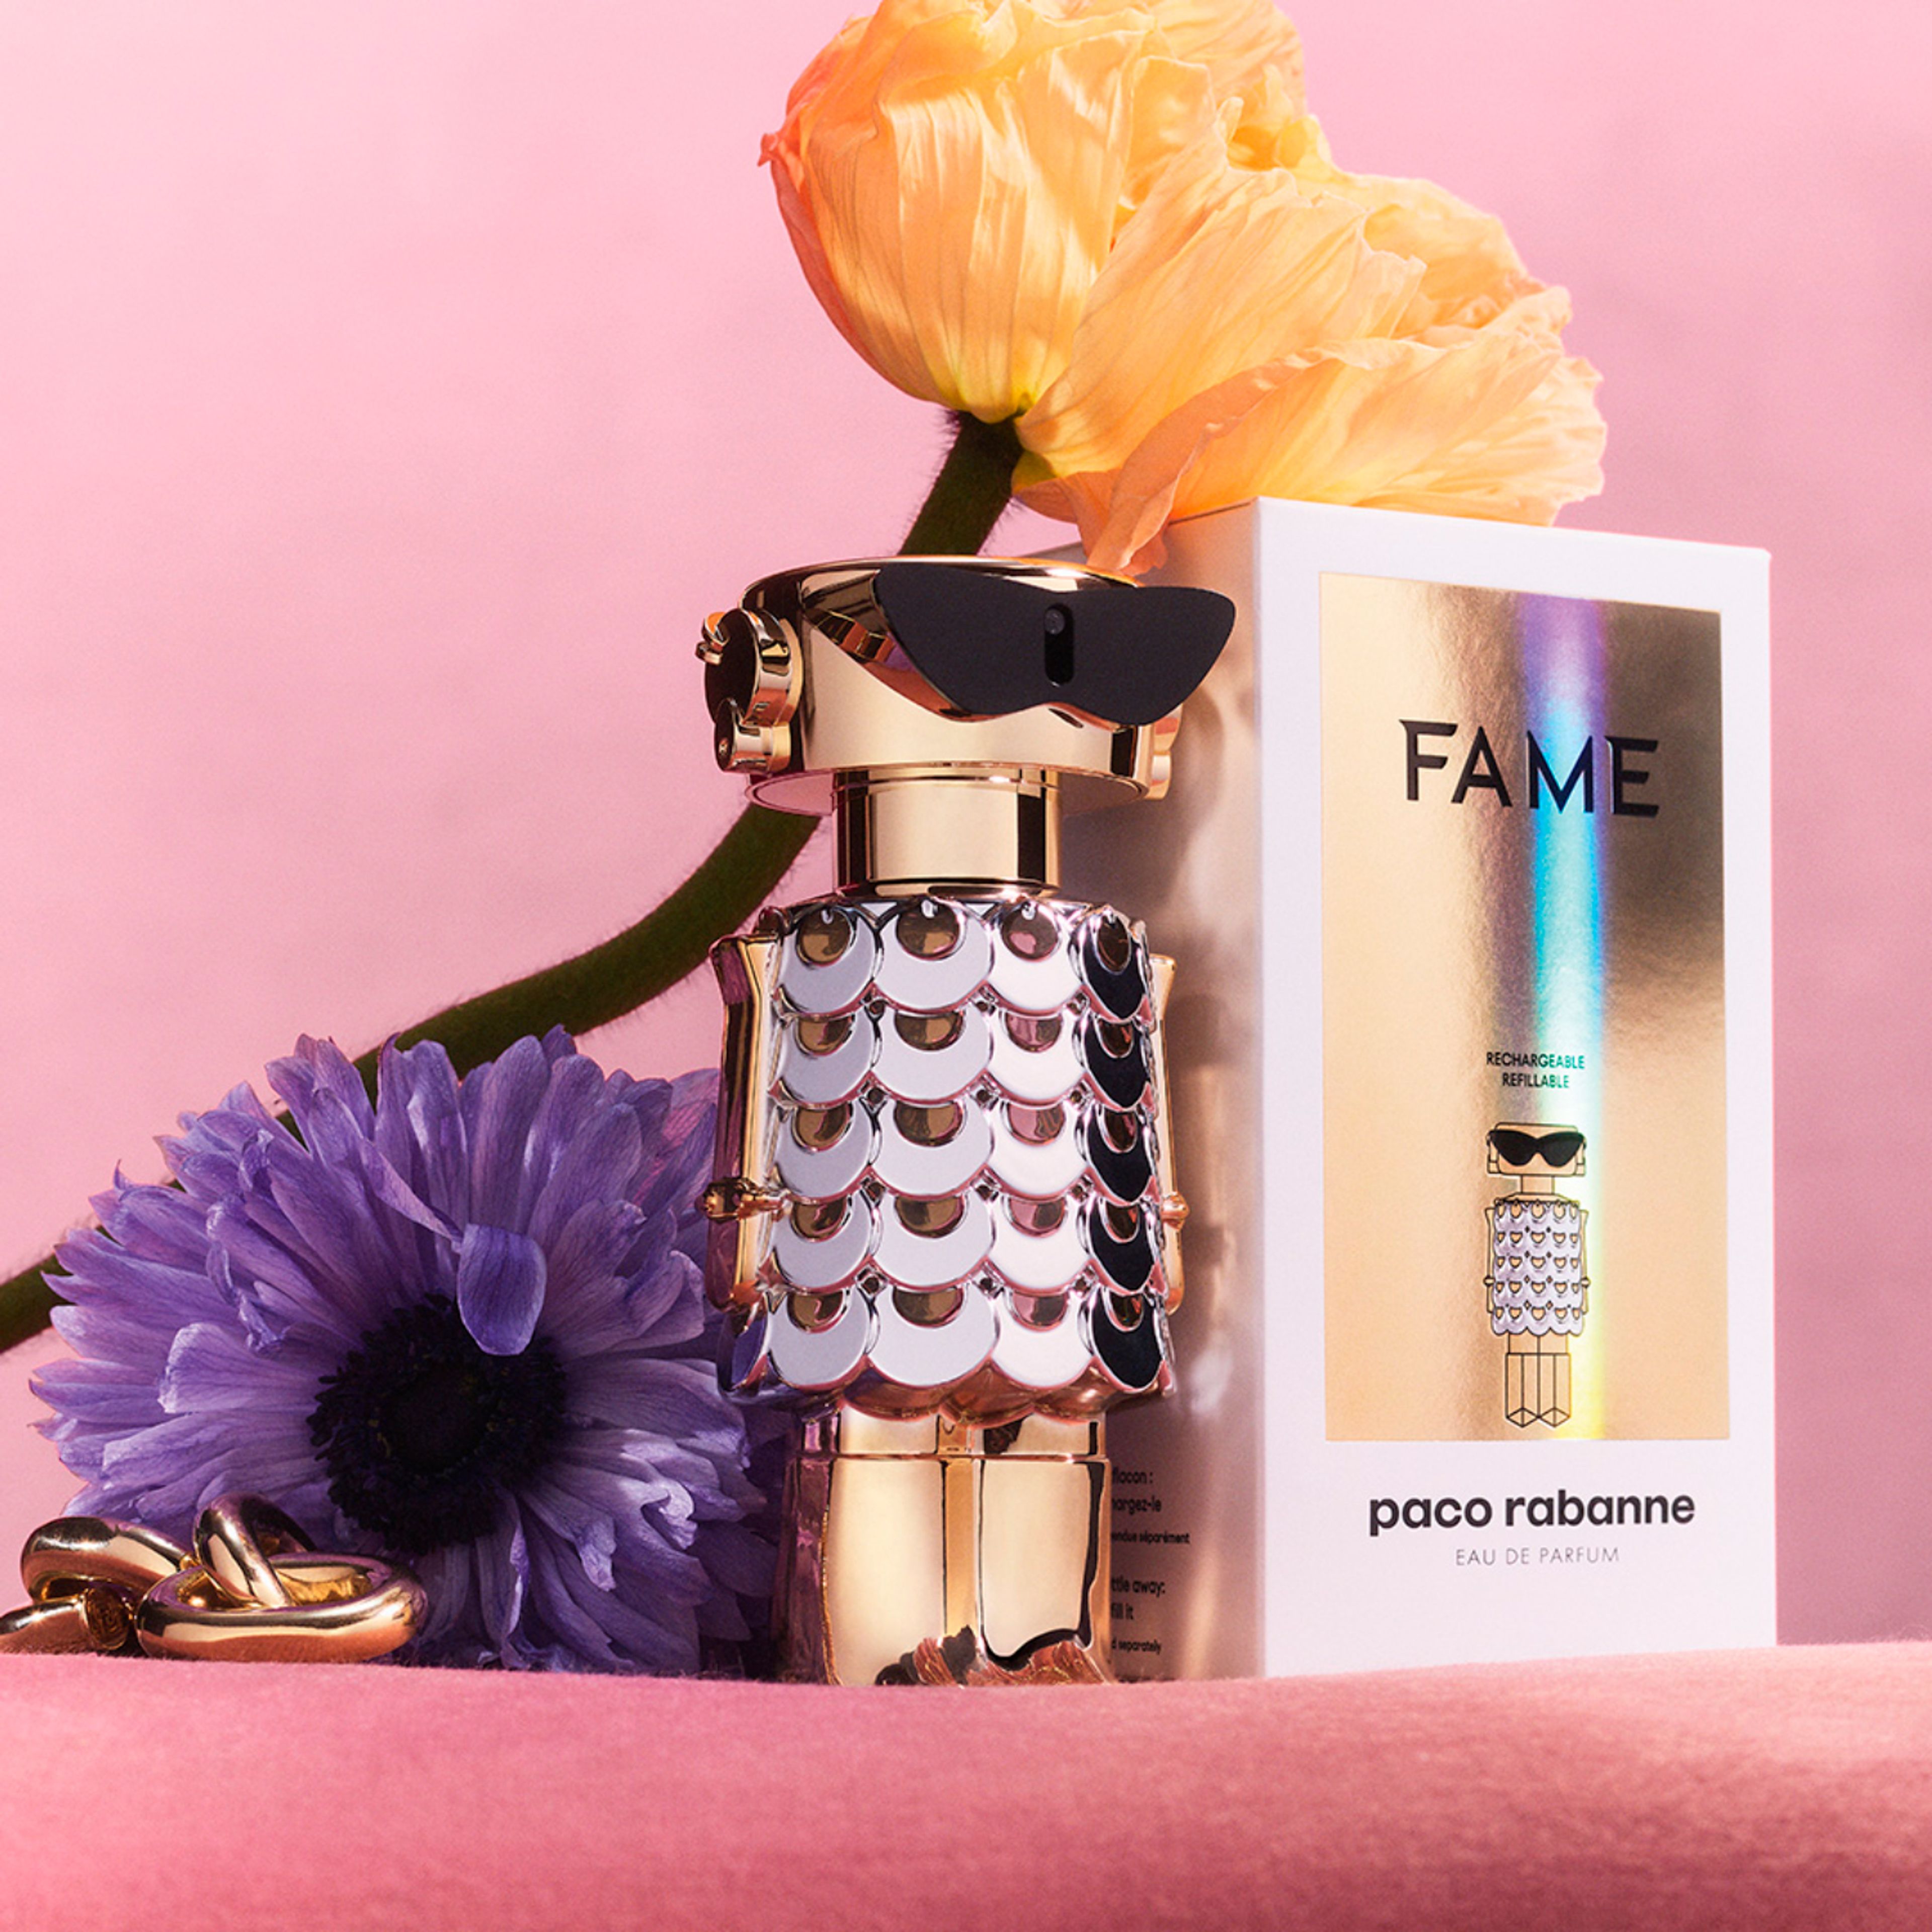 Fame Eau De Parfum Paco Rabanne 3